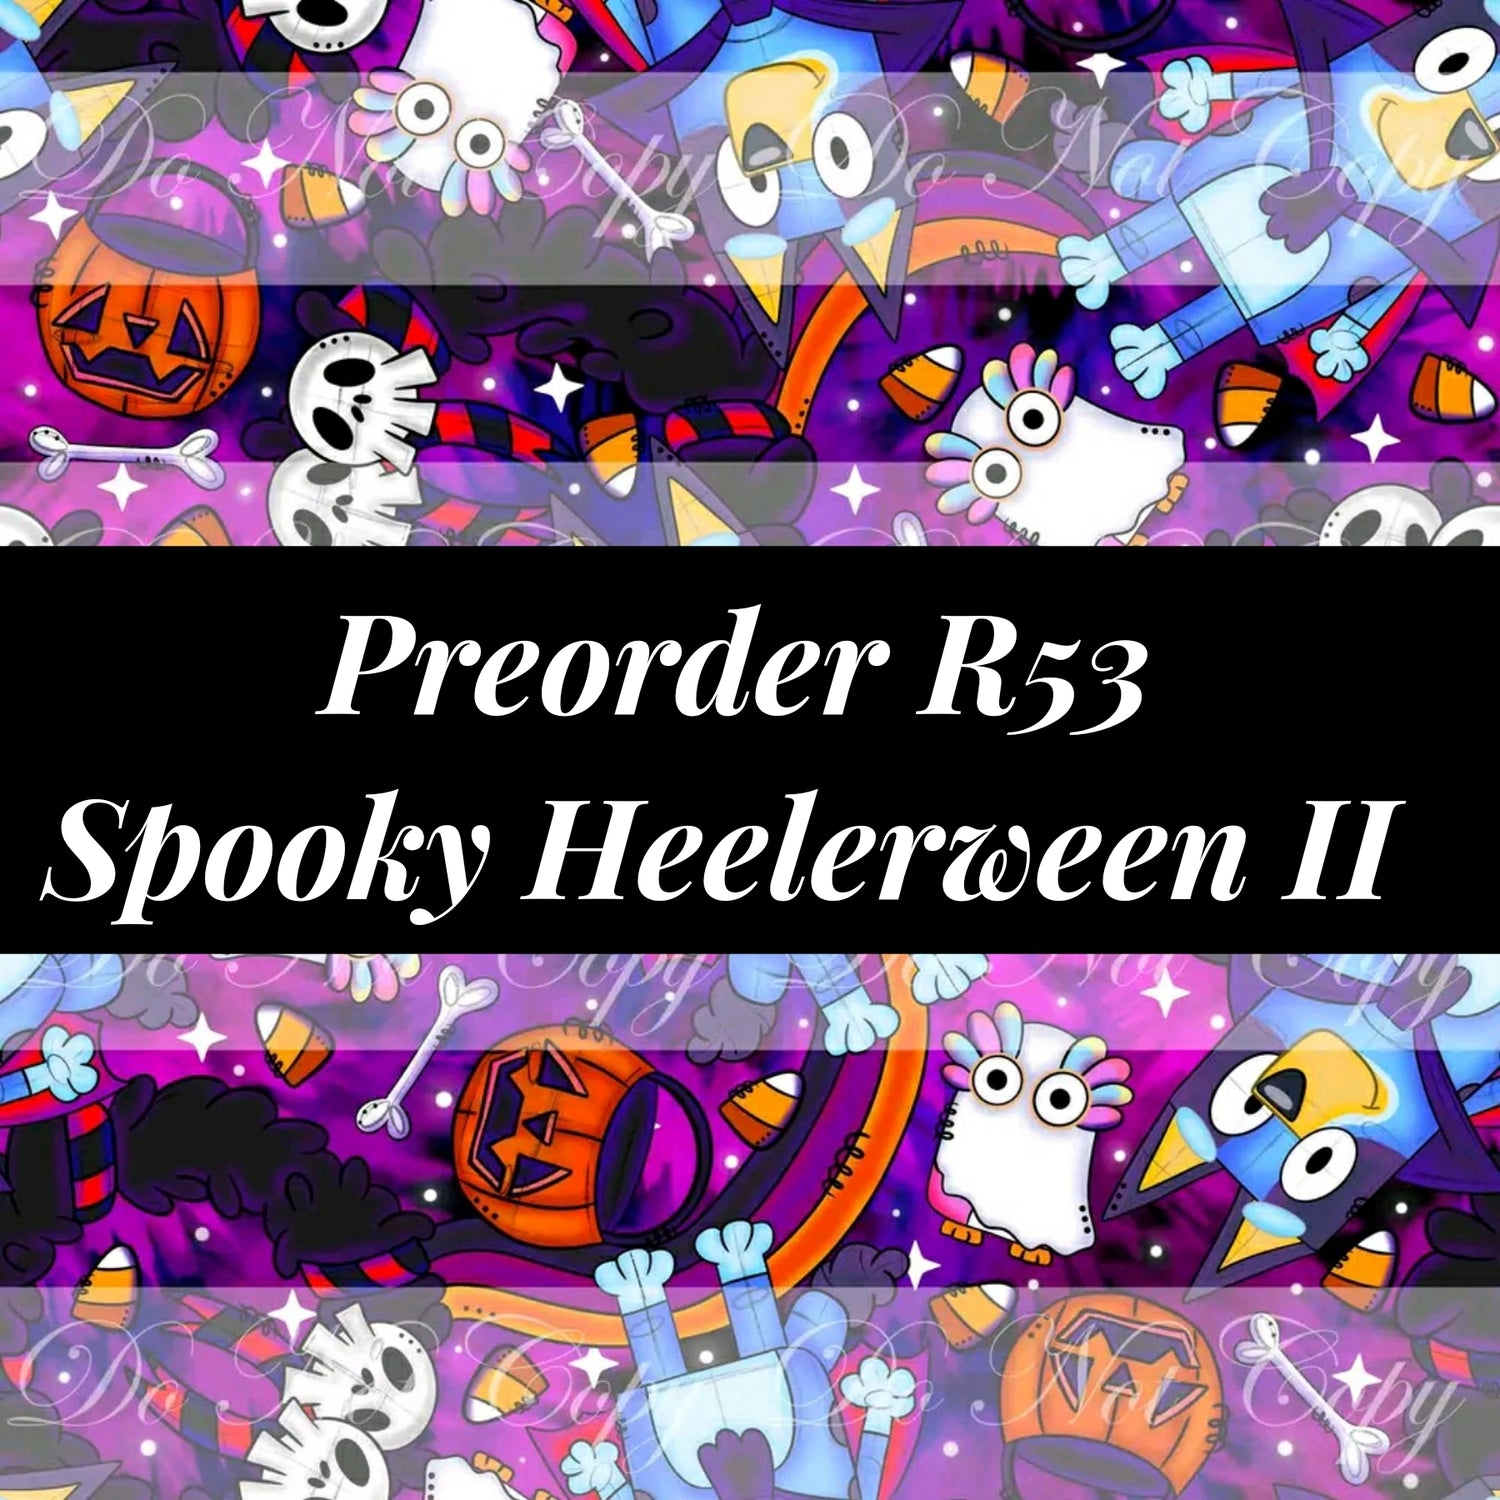 Preorder R53 - Spooky Heelerween II